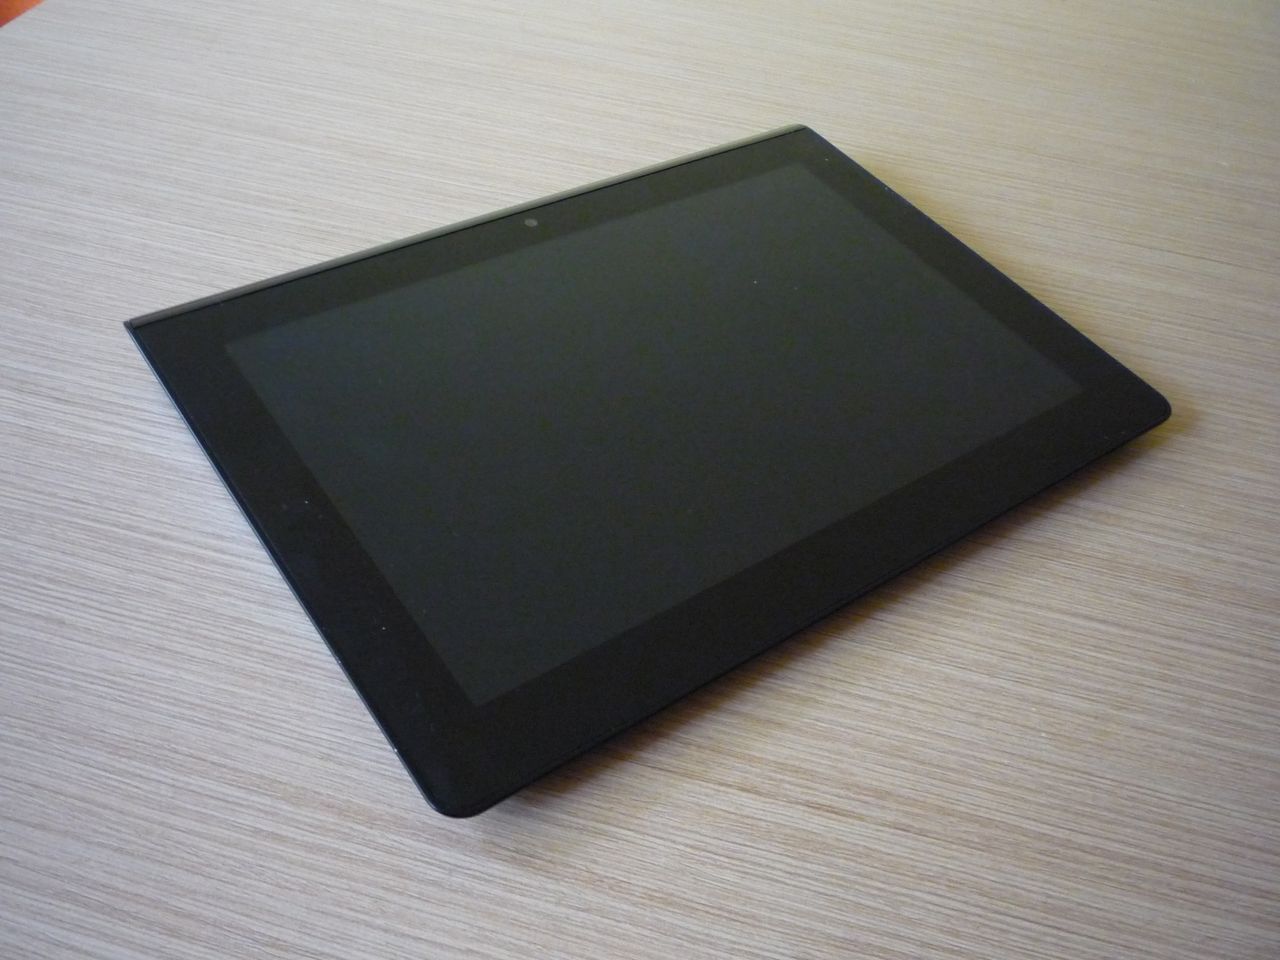 Sony Tablet S - indywidualista z japońskim rodowodem [test]